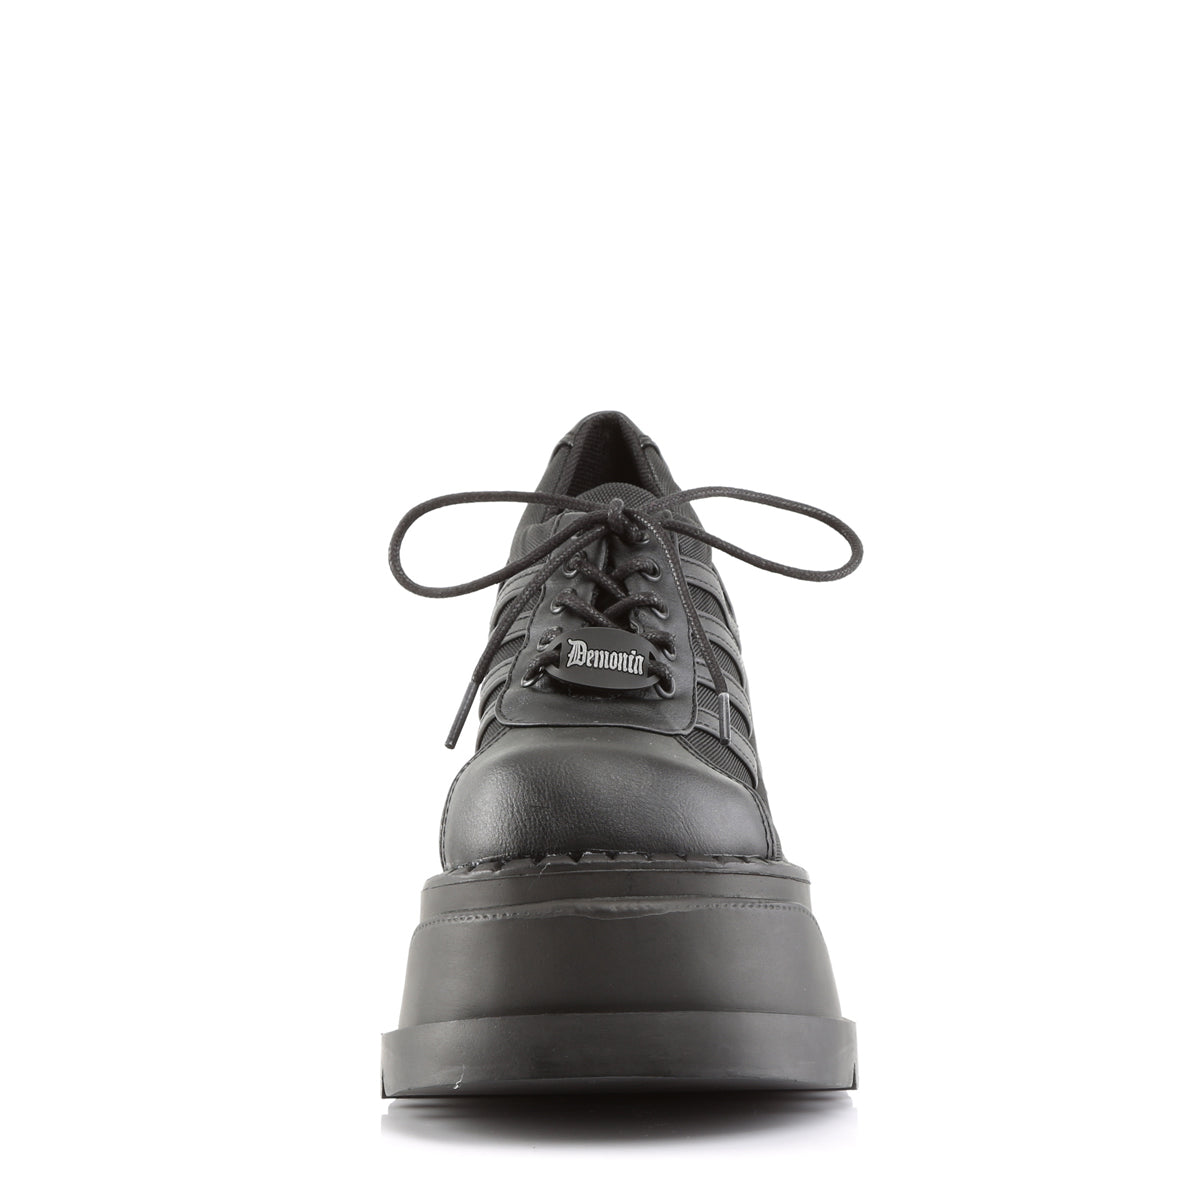 Wedge Platform Sneakers Black